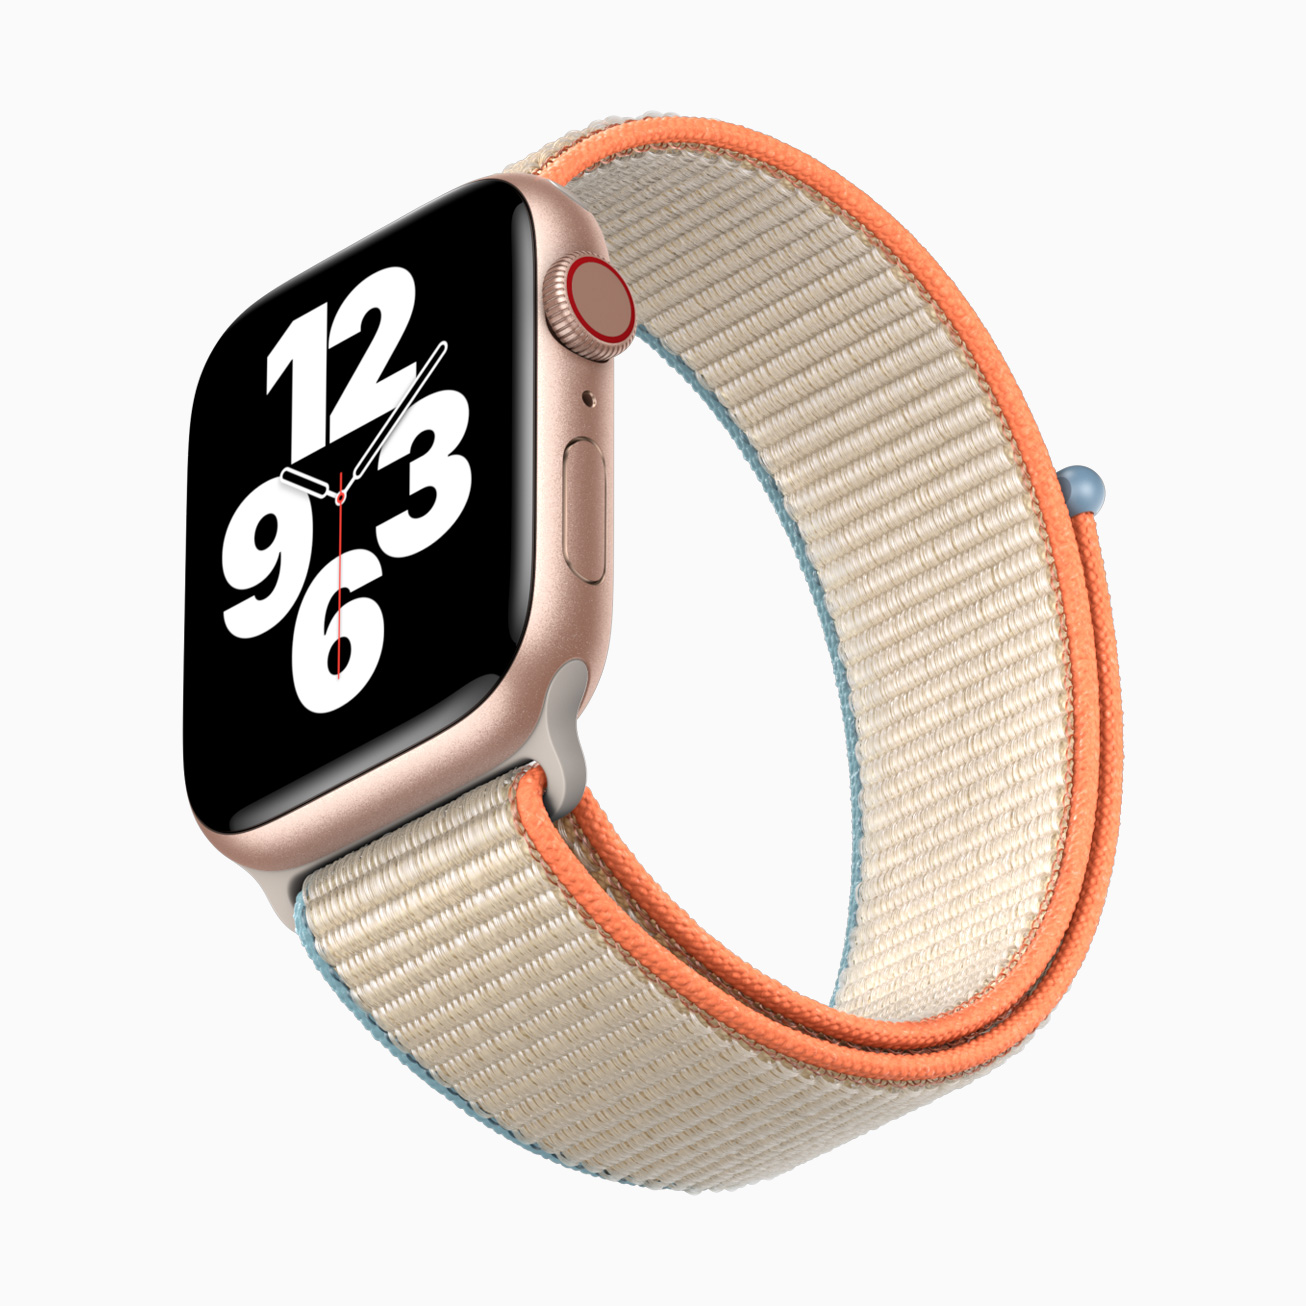 Apple Watch Se Watchface